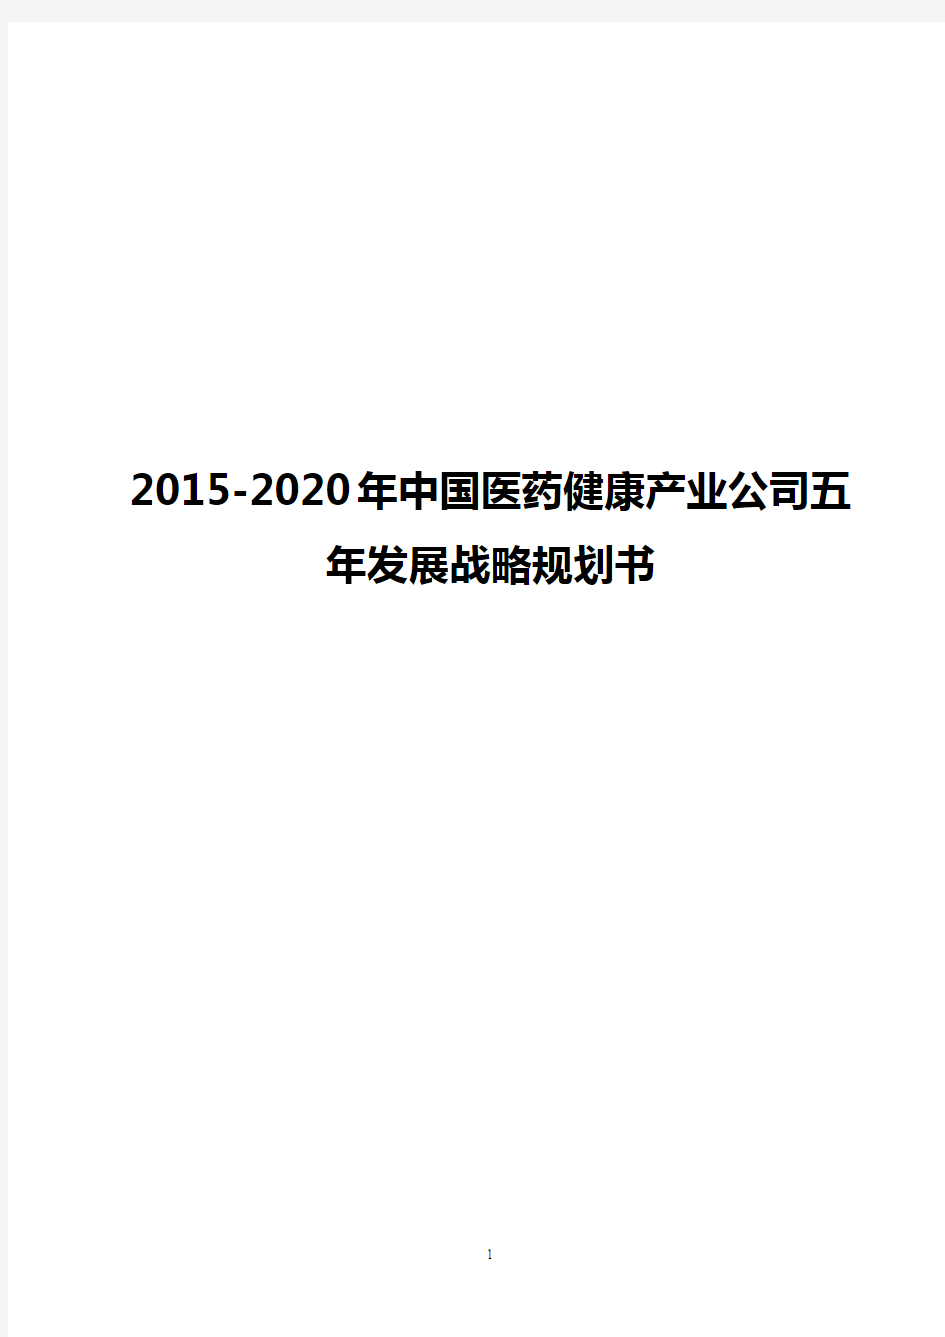 【完整版】2015-2020年中国医药健康产业公司五年发展战略规划书